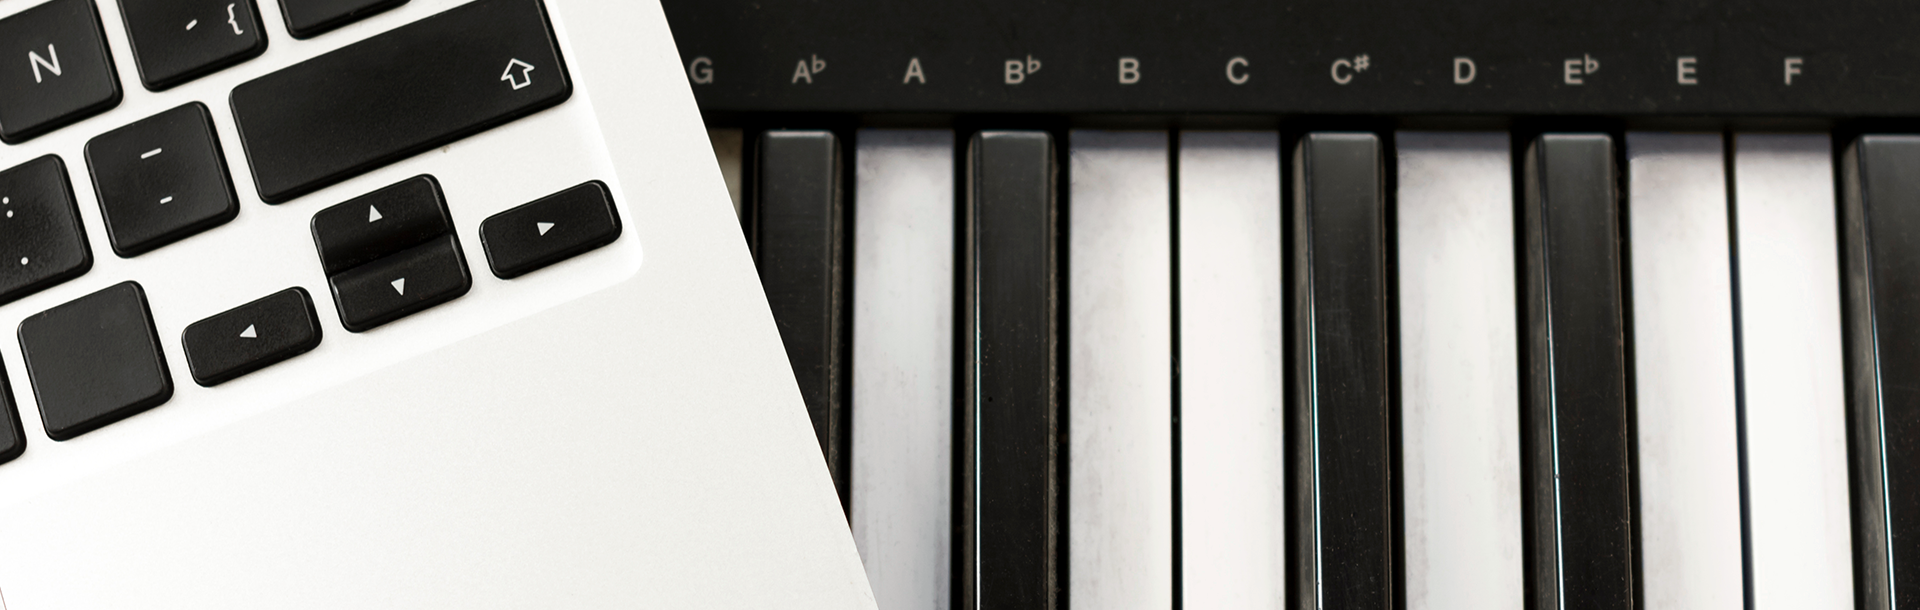 flatlay of computer keyboard on top of digital piano keyboard